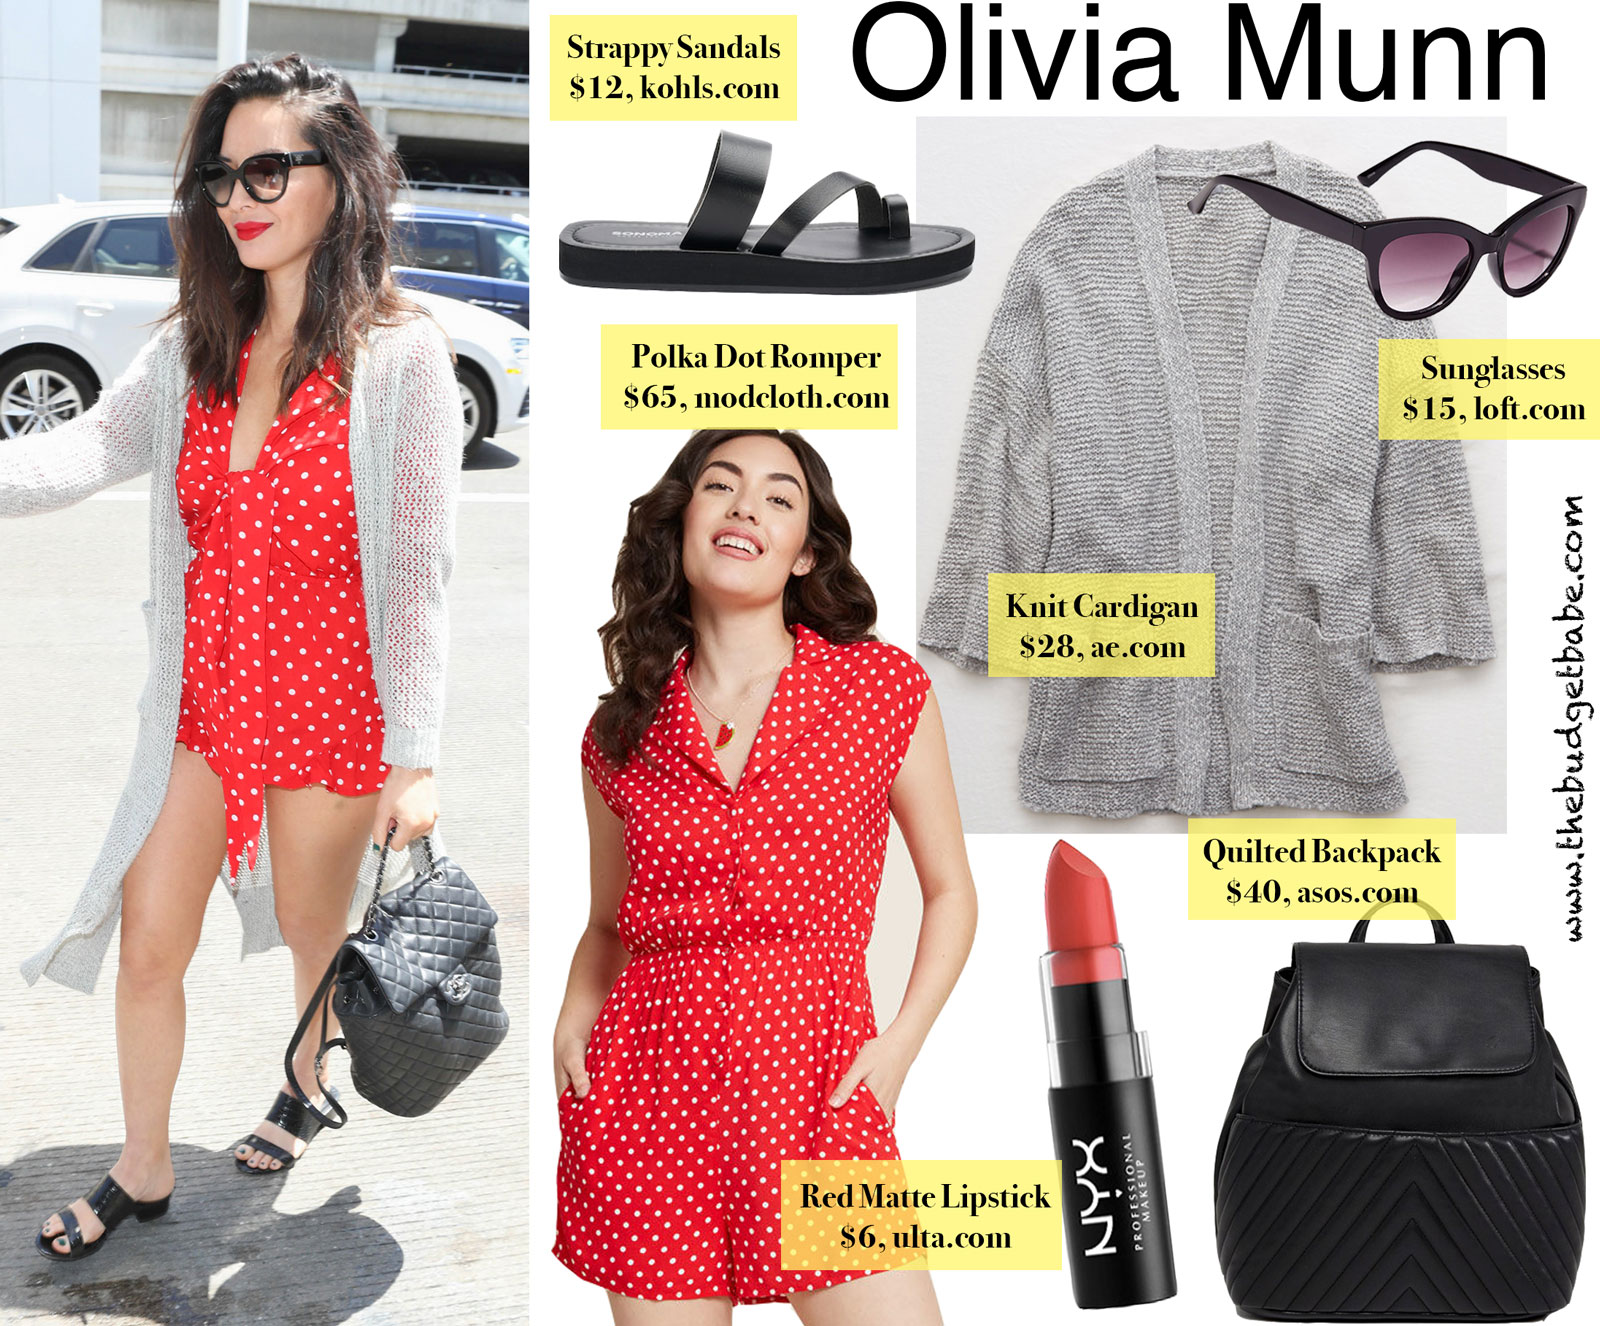 Olivia Munn Red Polka Dot Romper Look for Less